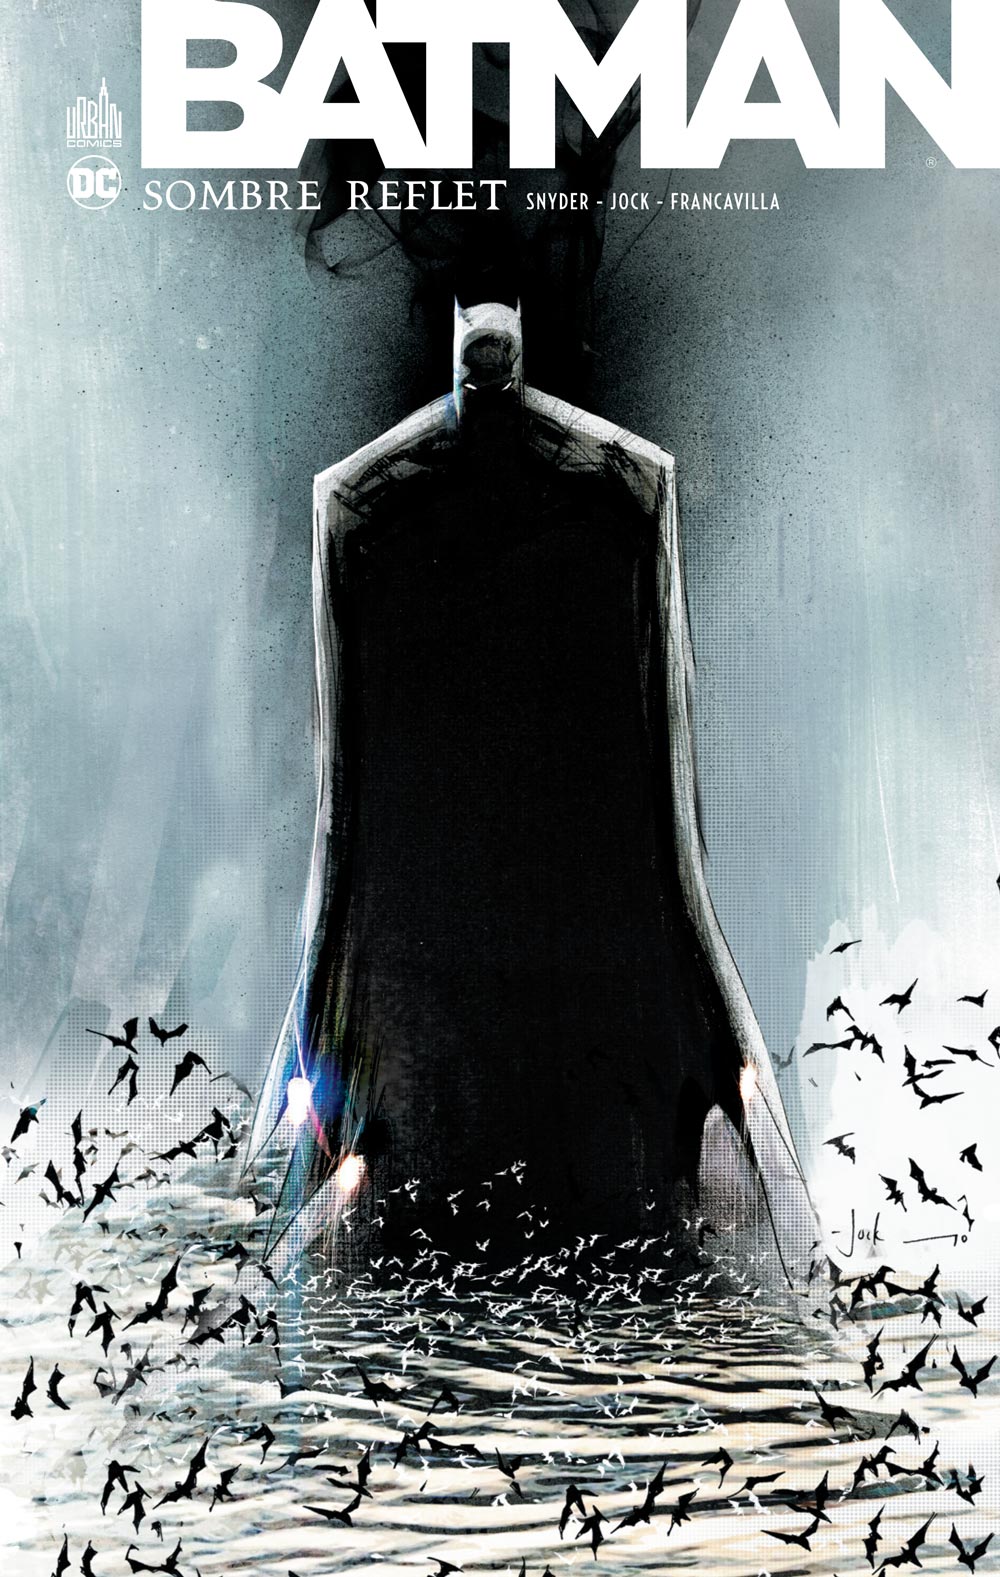 Batman Sombre Reflet intégrale - couv